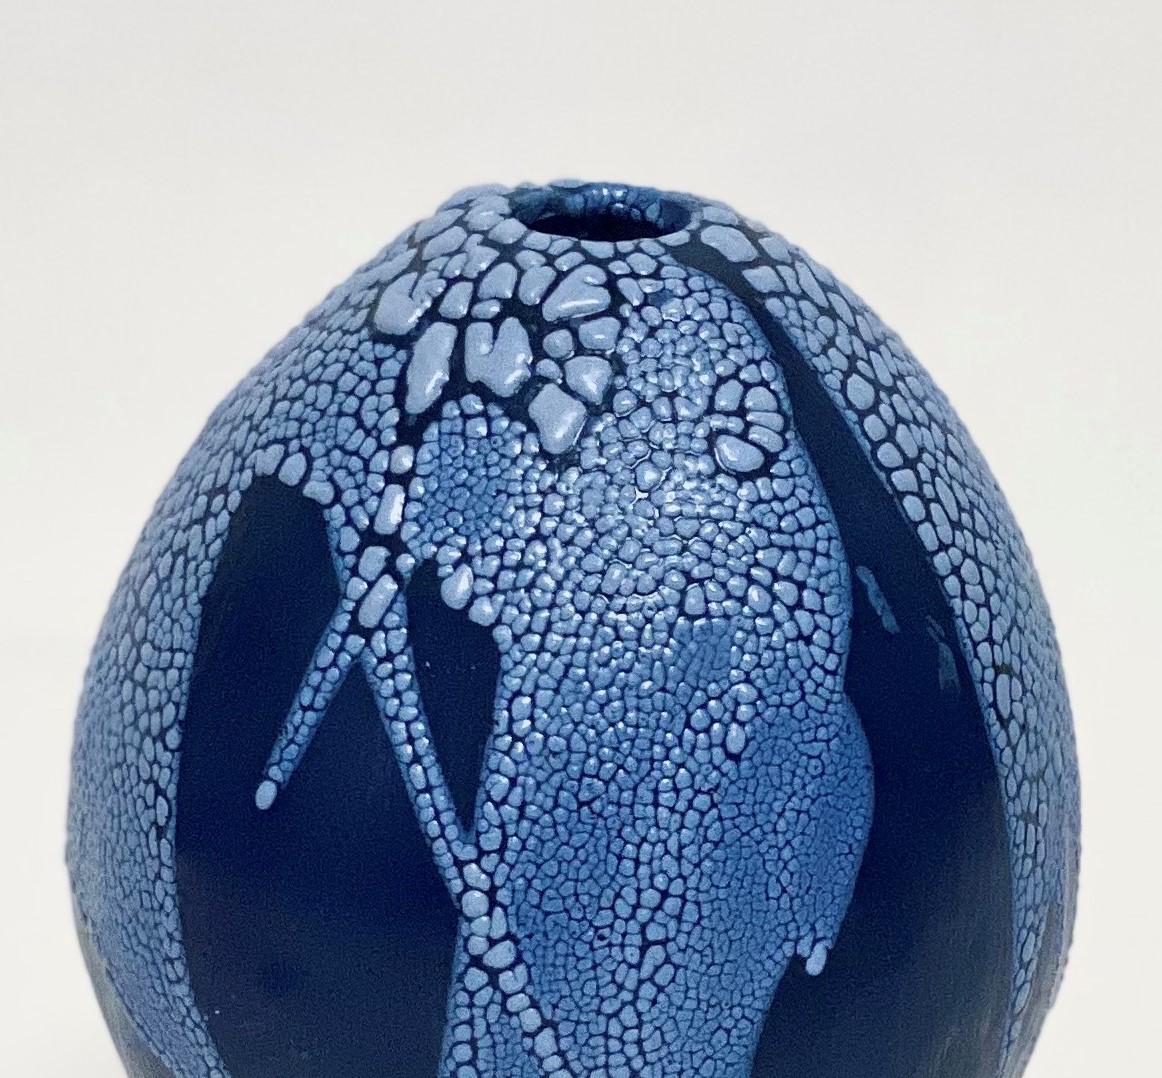 Post-Modern Blue/Blue Dragon Egg Vase by Astrid Öhman For Sale